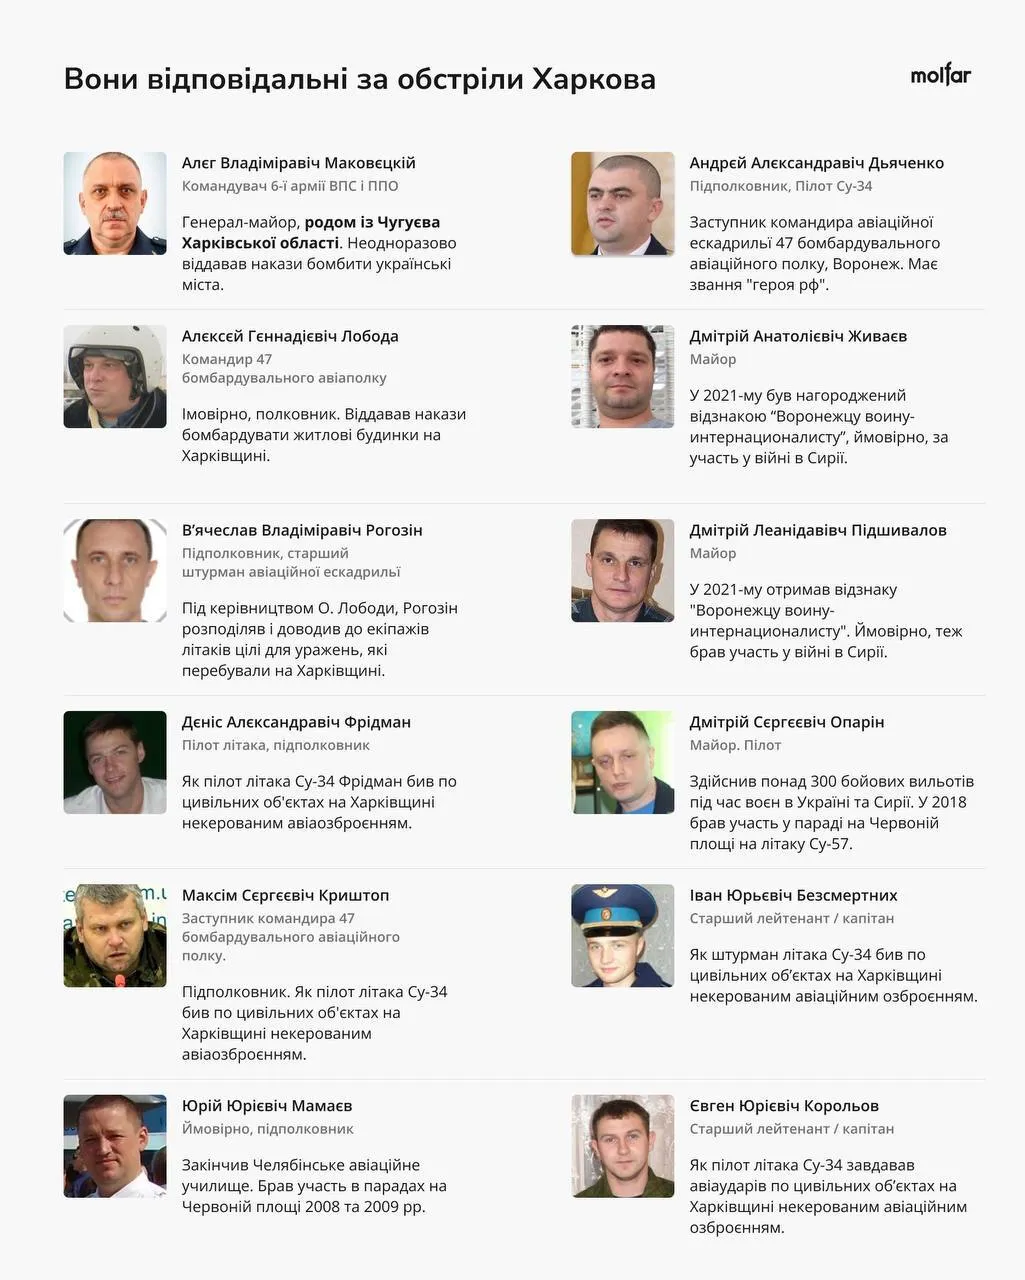 Они обстреливают Харьковщину: Molfar идентифицировал 55 российских военных преступников. Фото